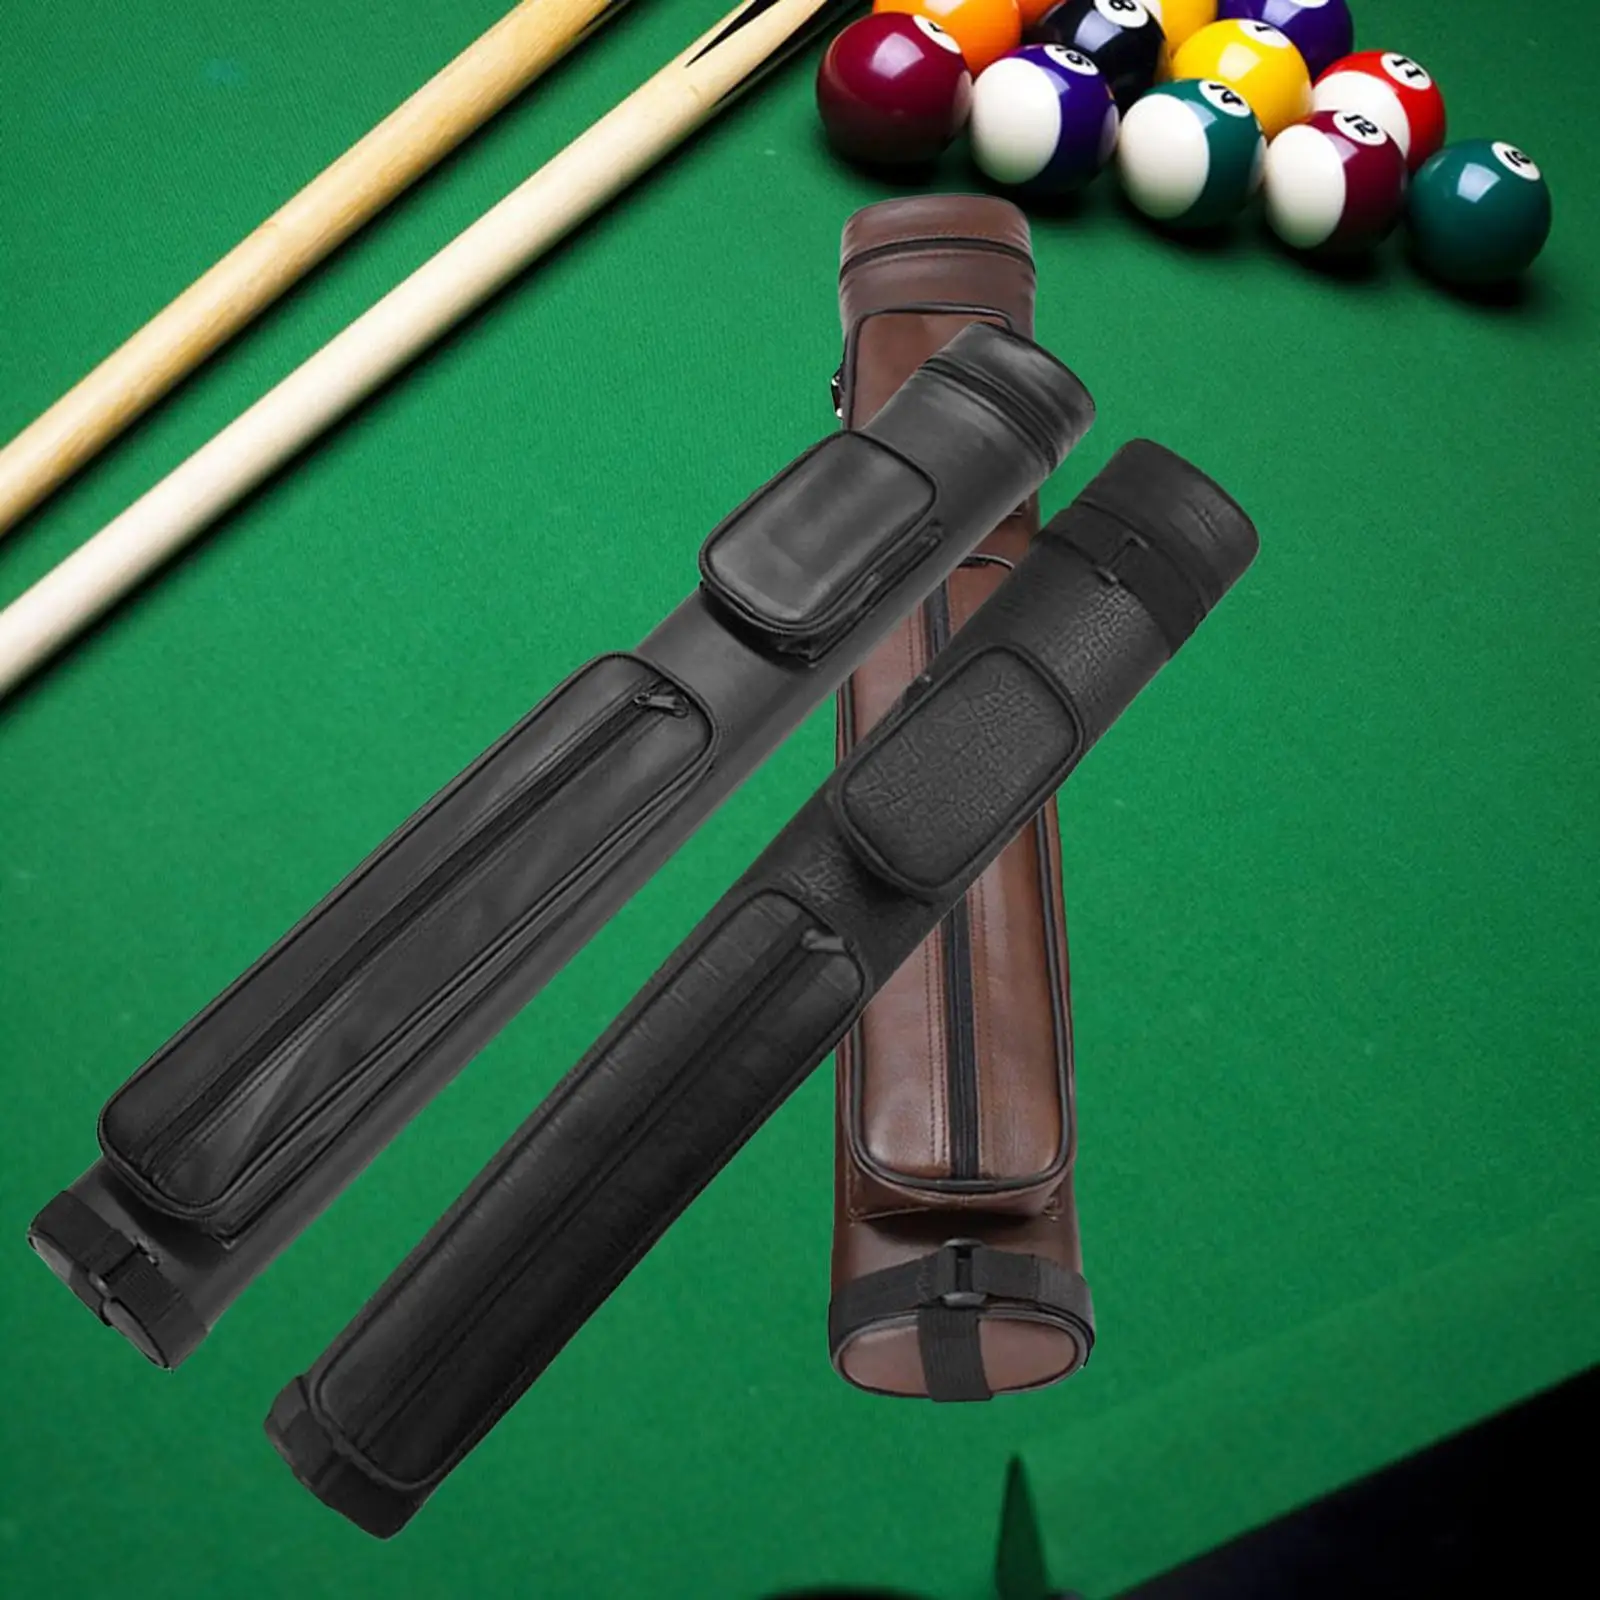 Billiard Pool Cue Bag 4 Holes Carrying Case Adjustable Shoulder Strap Storage